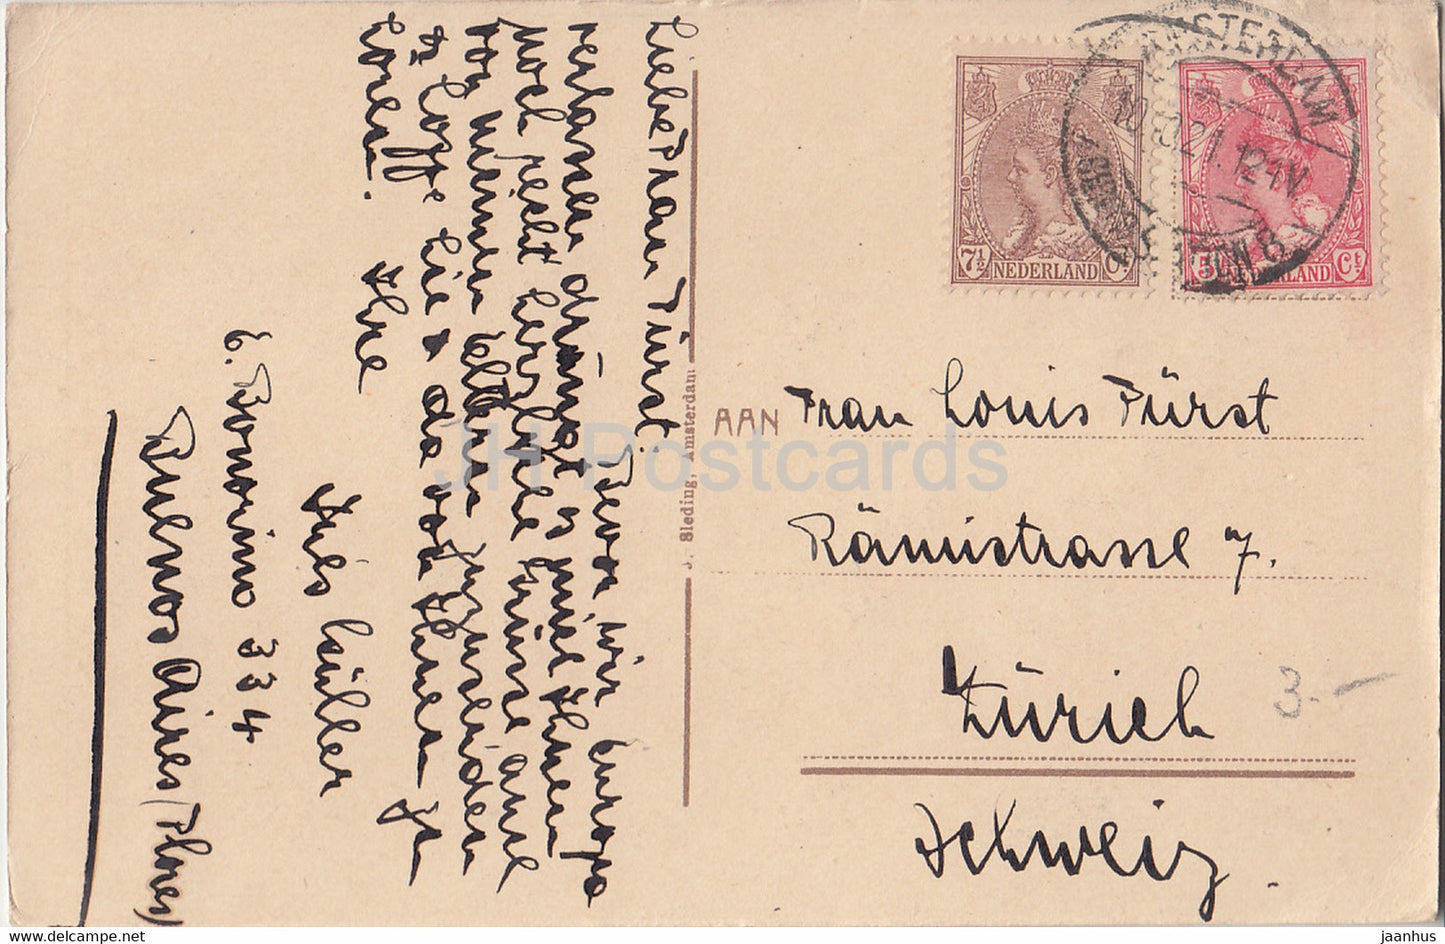 Amsterdam - Singel - bateau - carte postale ancienne - 1921 - Pays-Bas - utilisé